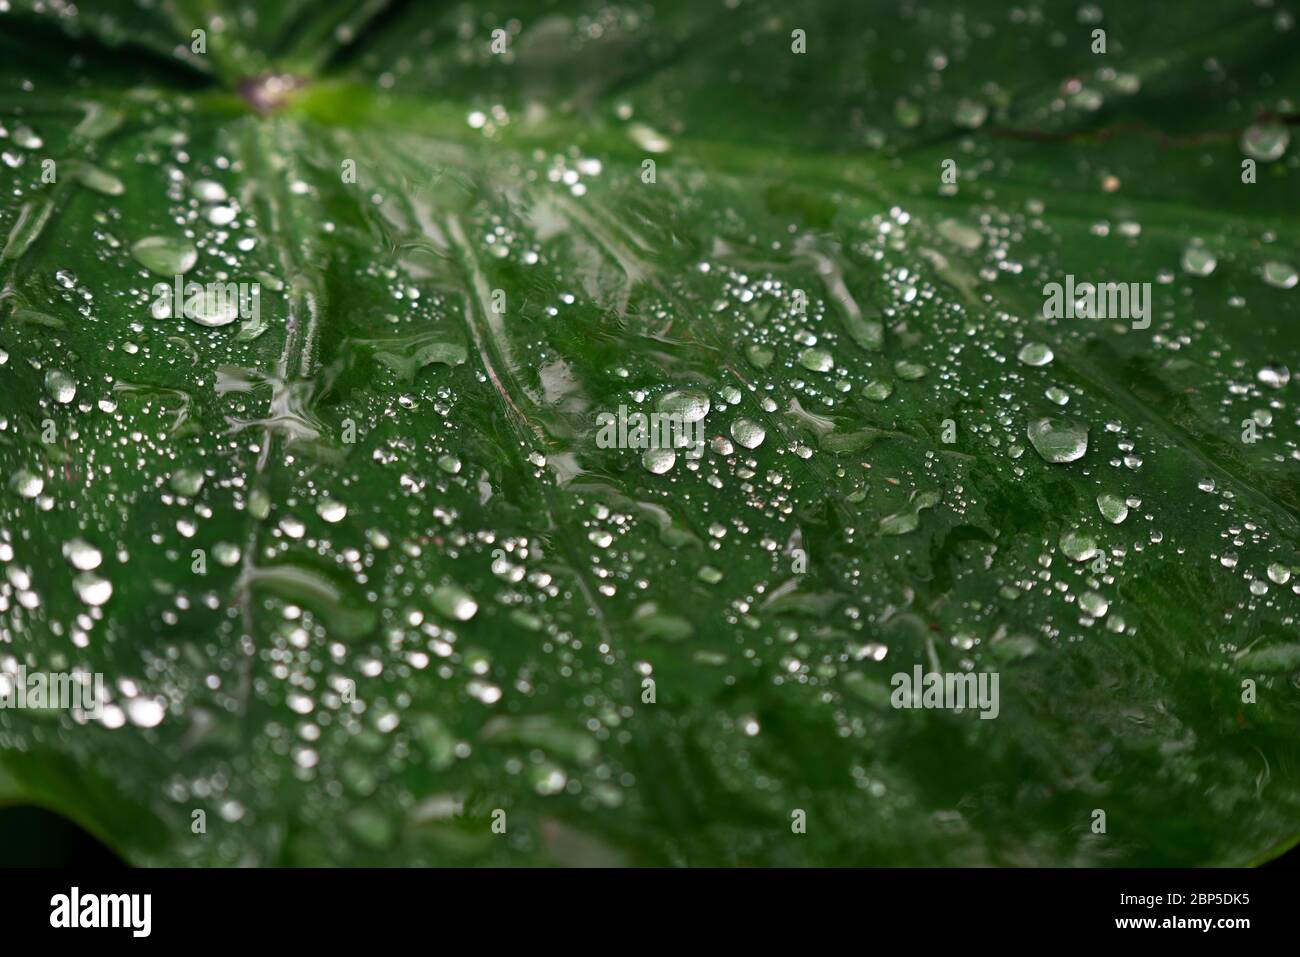 Chutes sur une feuille dans la forêt amazonienne pendant la saison des pluies tropicales, parc national Yasuni, Équateur. Banque D'Images